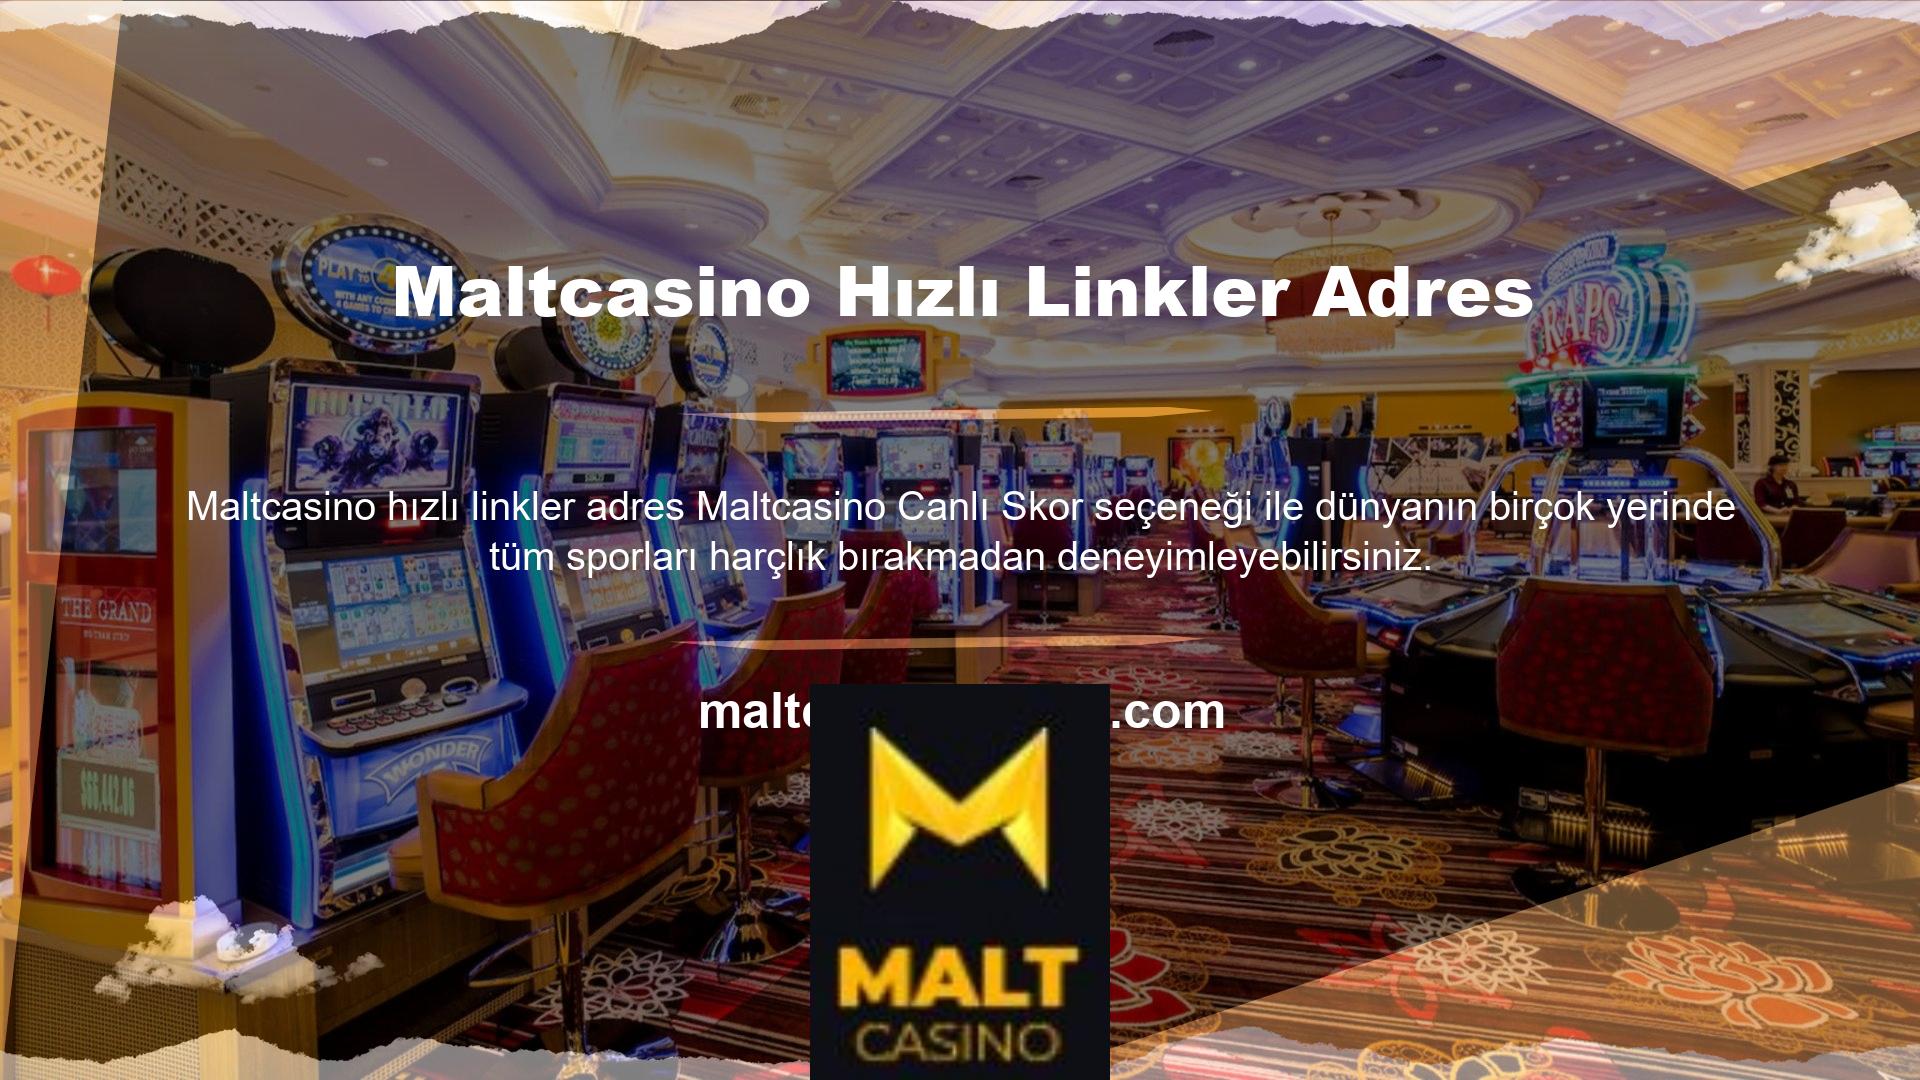 Bugün Maltcasino, kullanım kolaylığı en üst düzeyde olan en prestijli web sitesine sahiptir